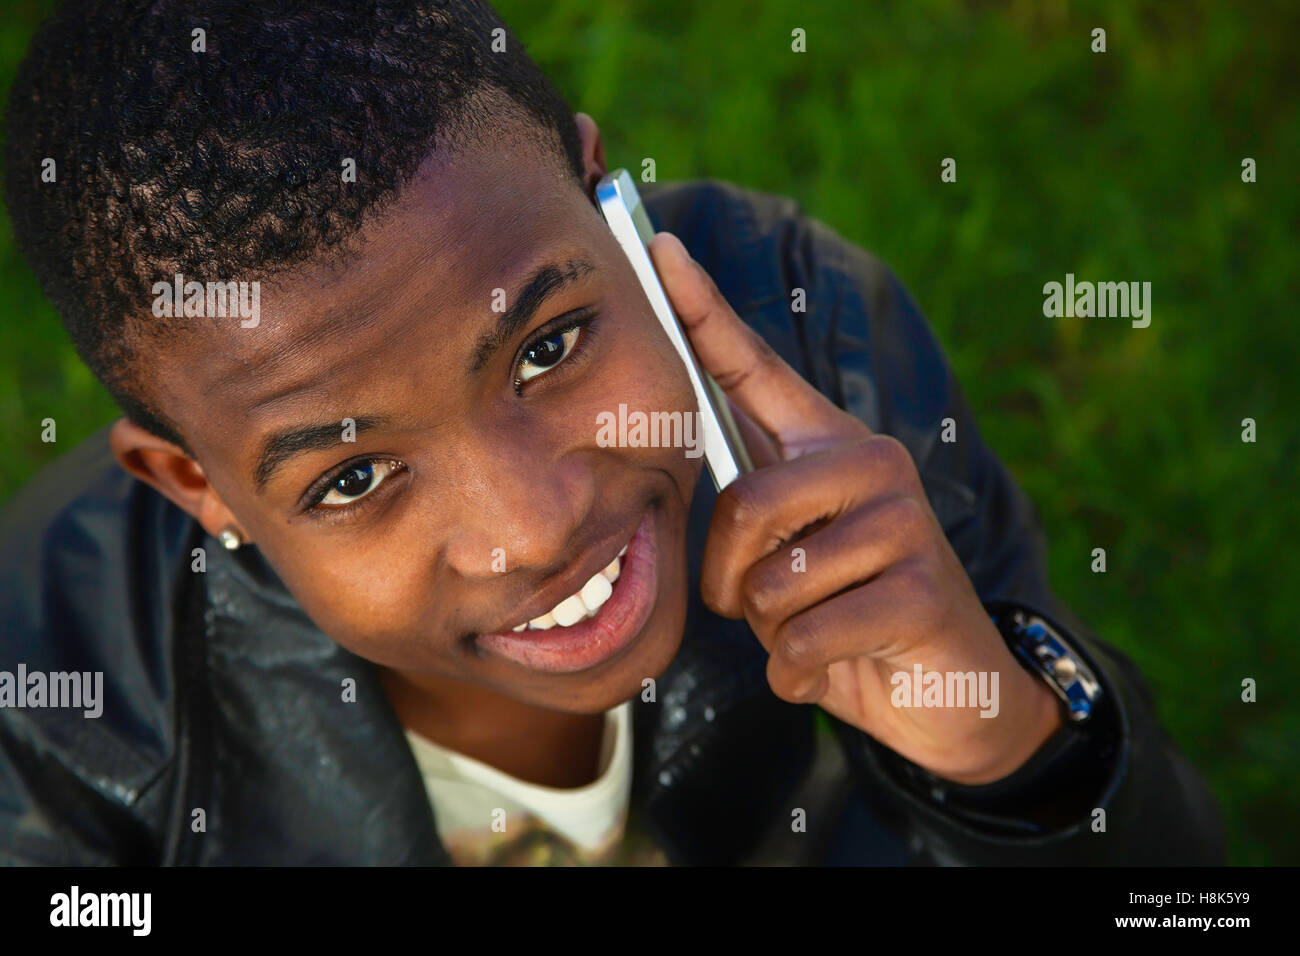 Giovane africano sul telefono cellulare Foto Stock